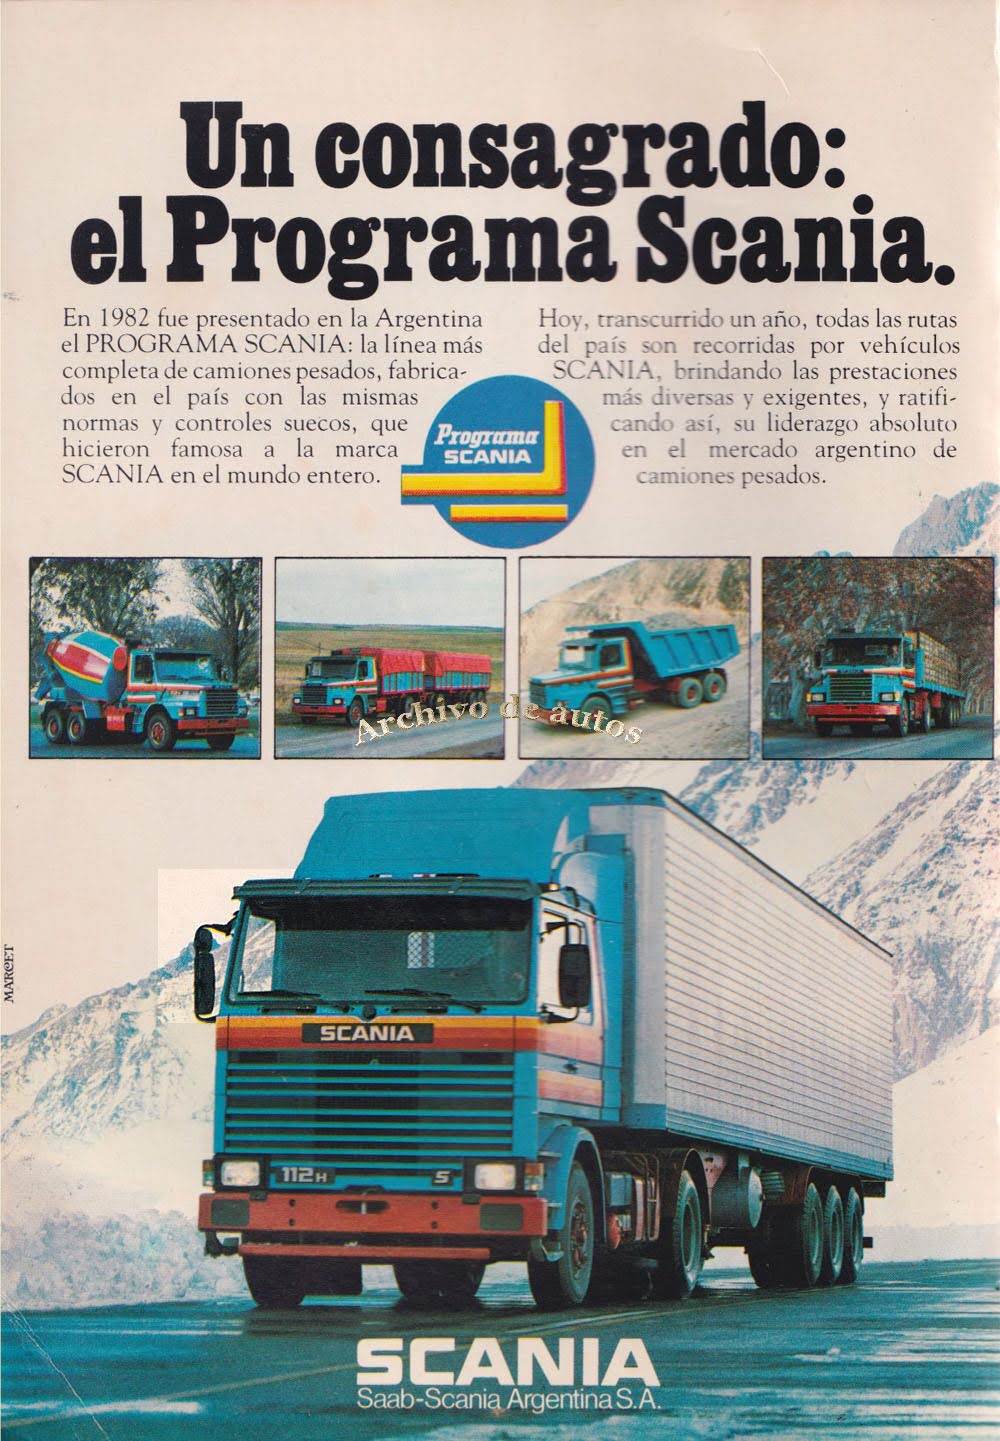 La campaña de accesorios de Scania se centra en las ruedas este verano